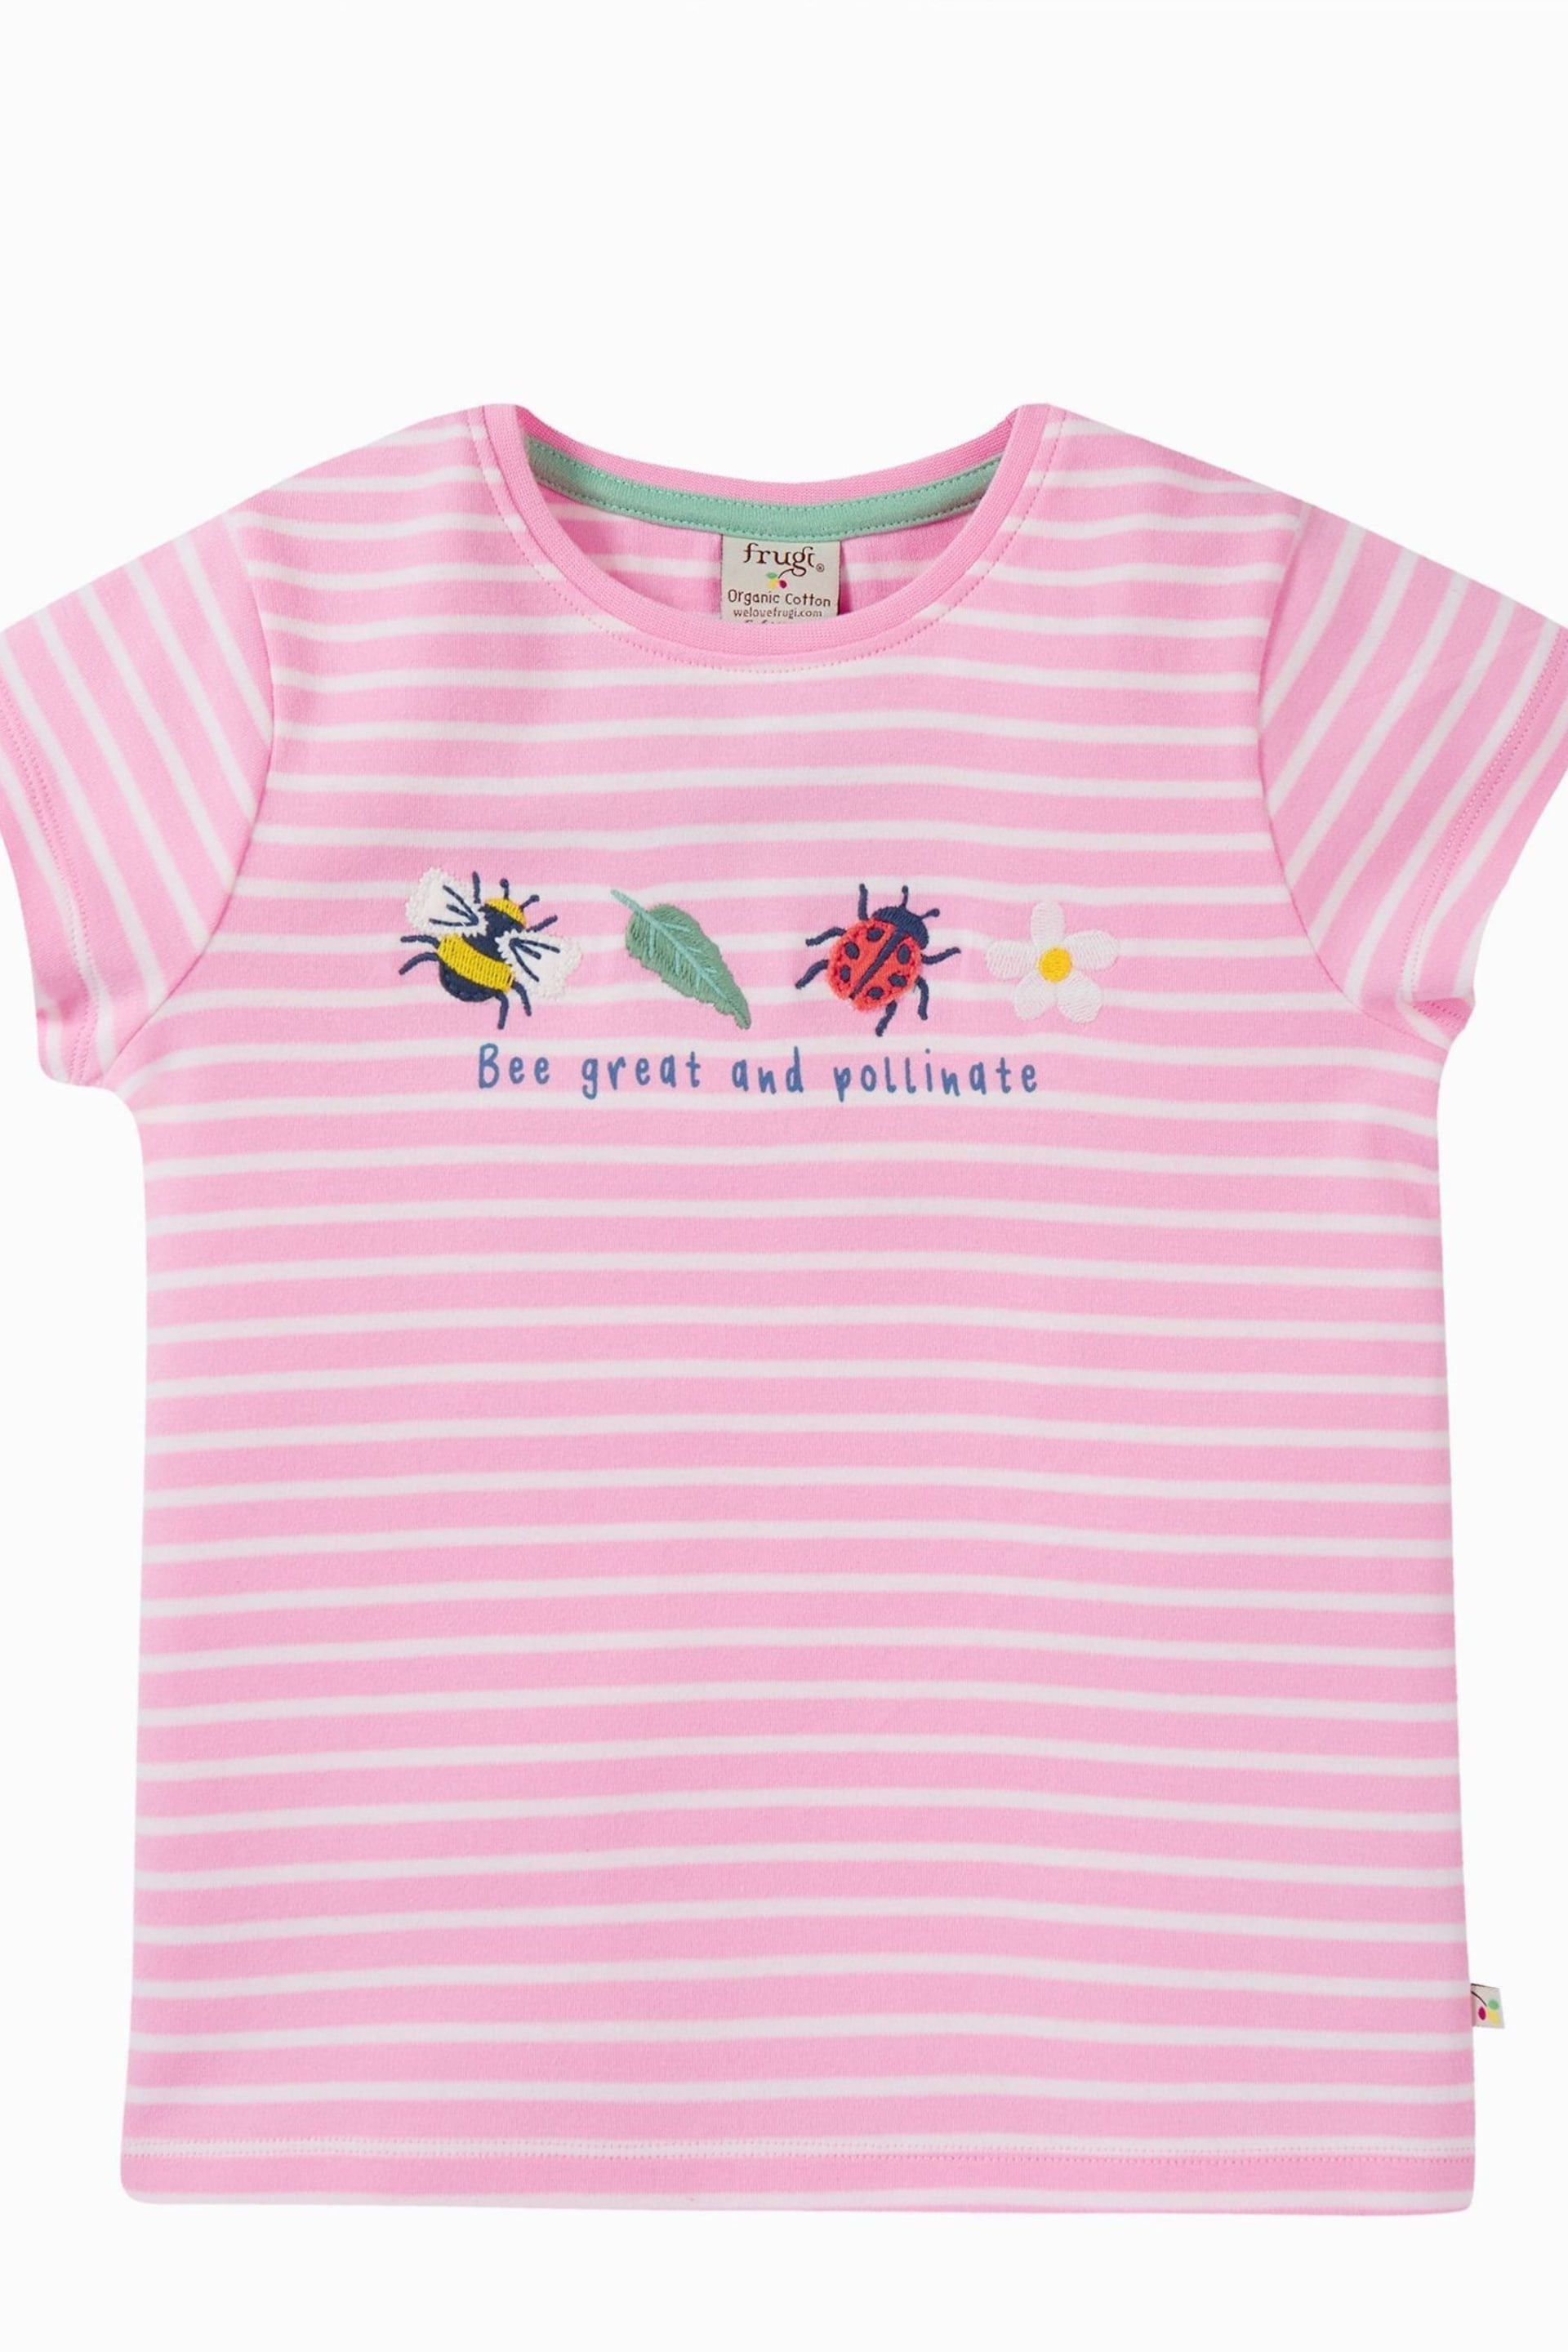 Frugi Pink Stripe Applique Short Sleeve T-Shirt - Image 1 of 3